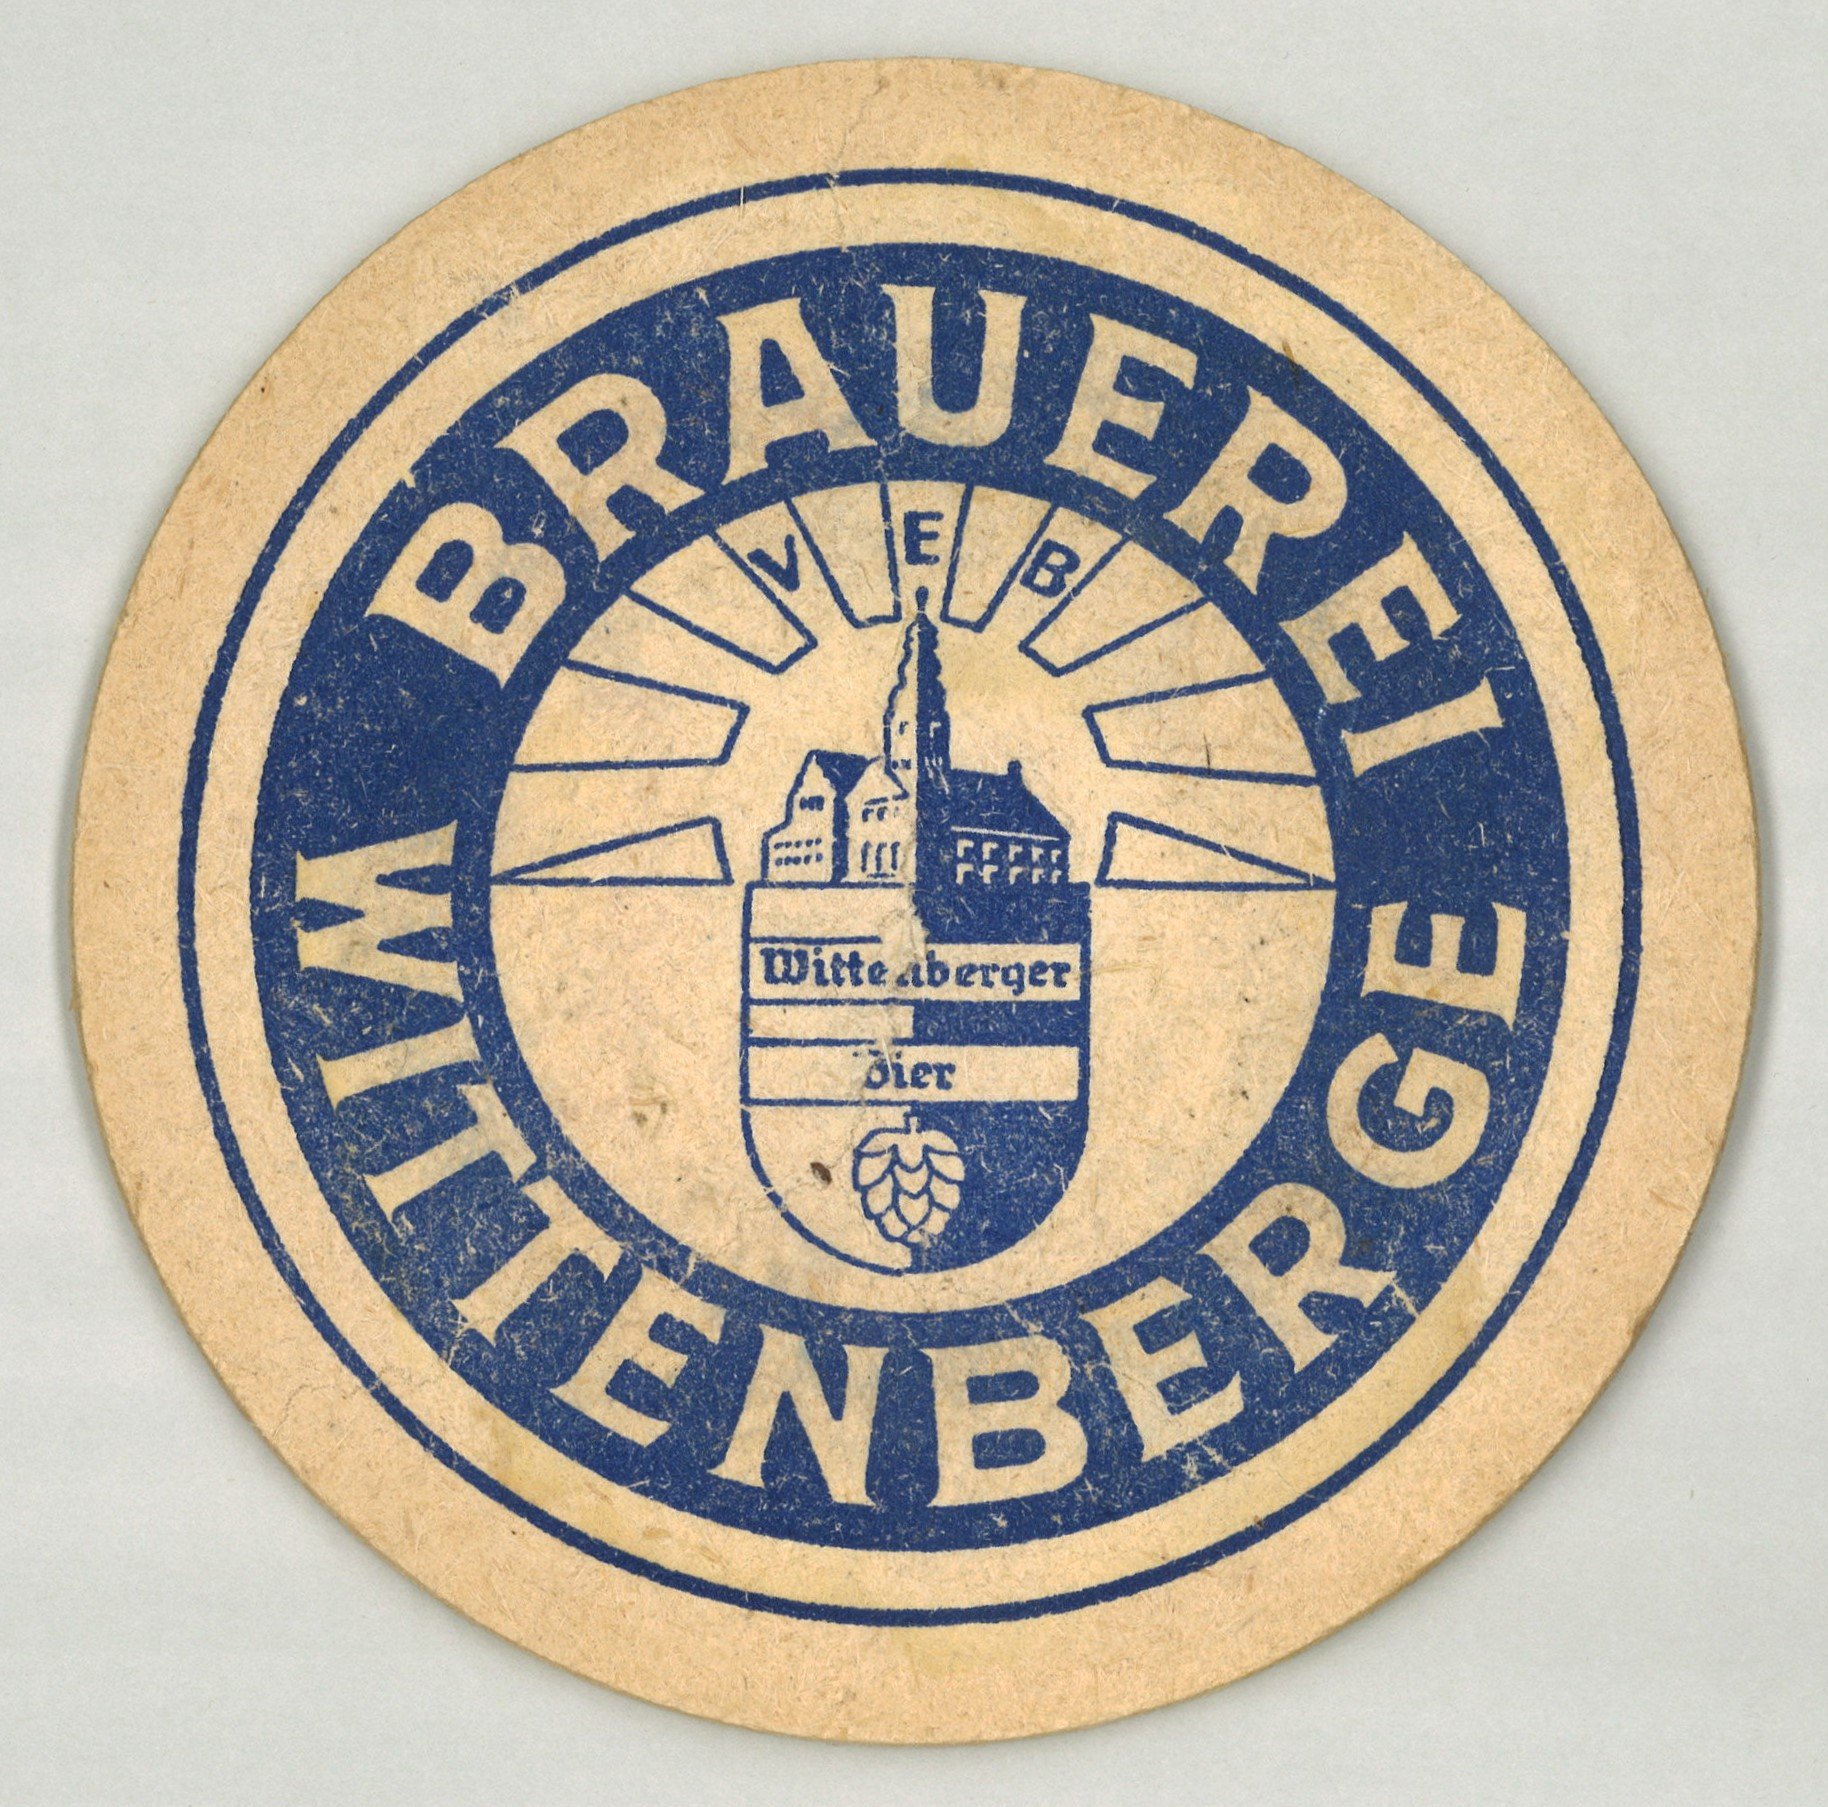 Wittenberge: VEB Brauerei Wittenberge (Landesgeschichtliche Vereinigung für die Mark Brandenburg e.V., Archiv CC BY)